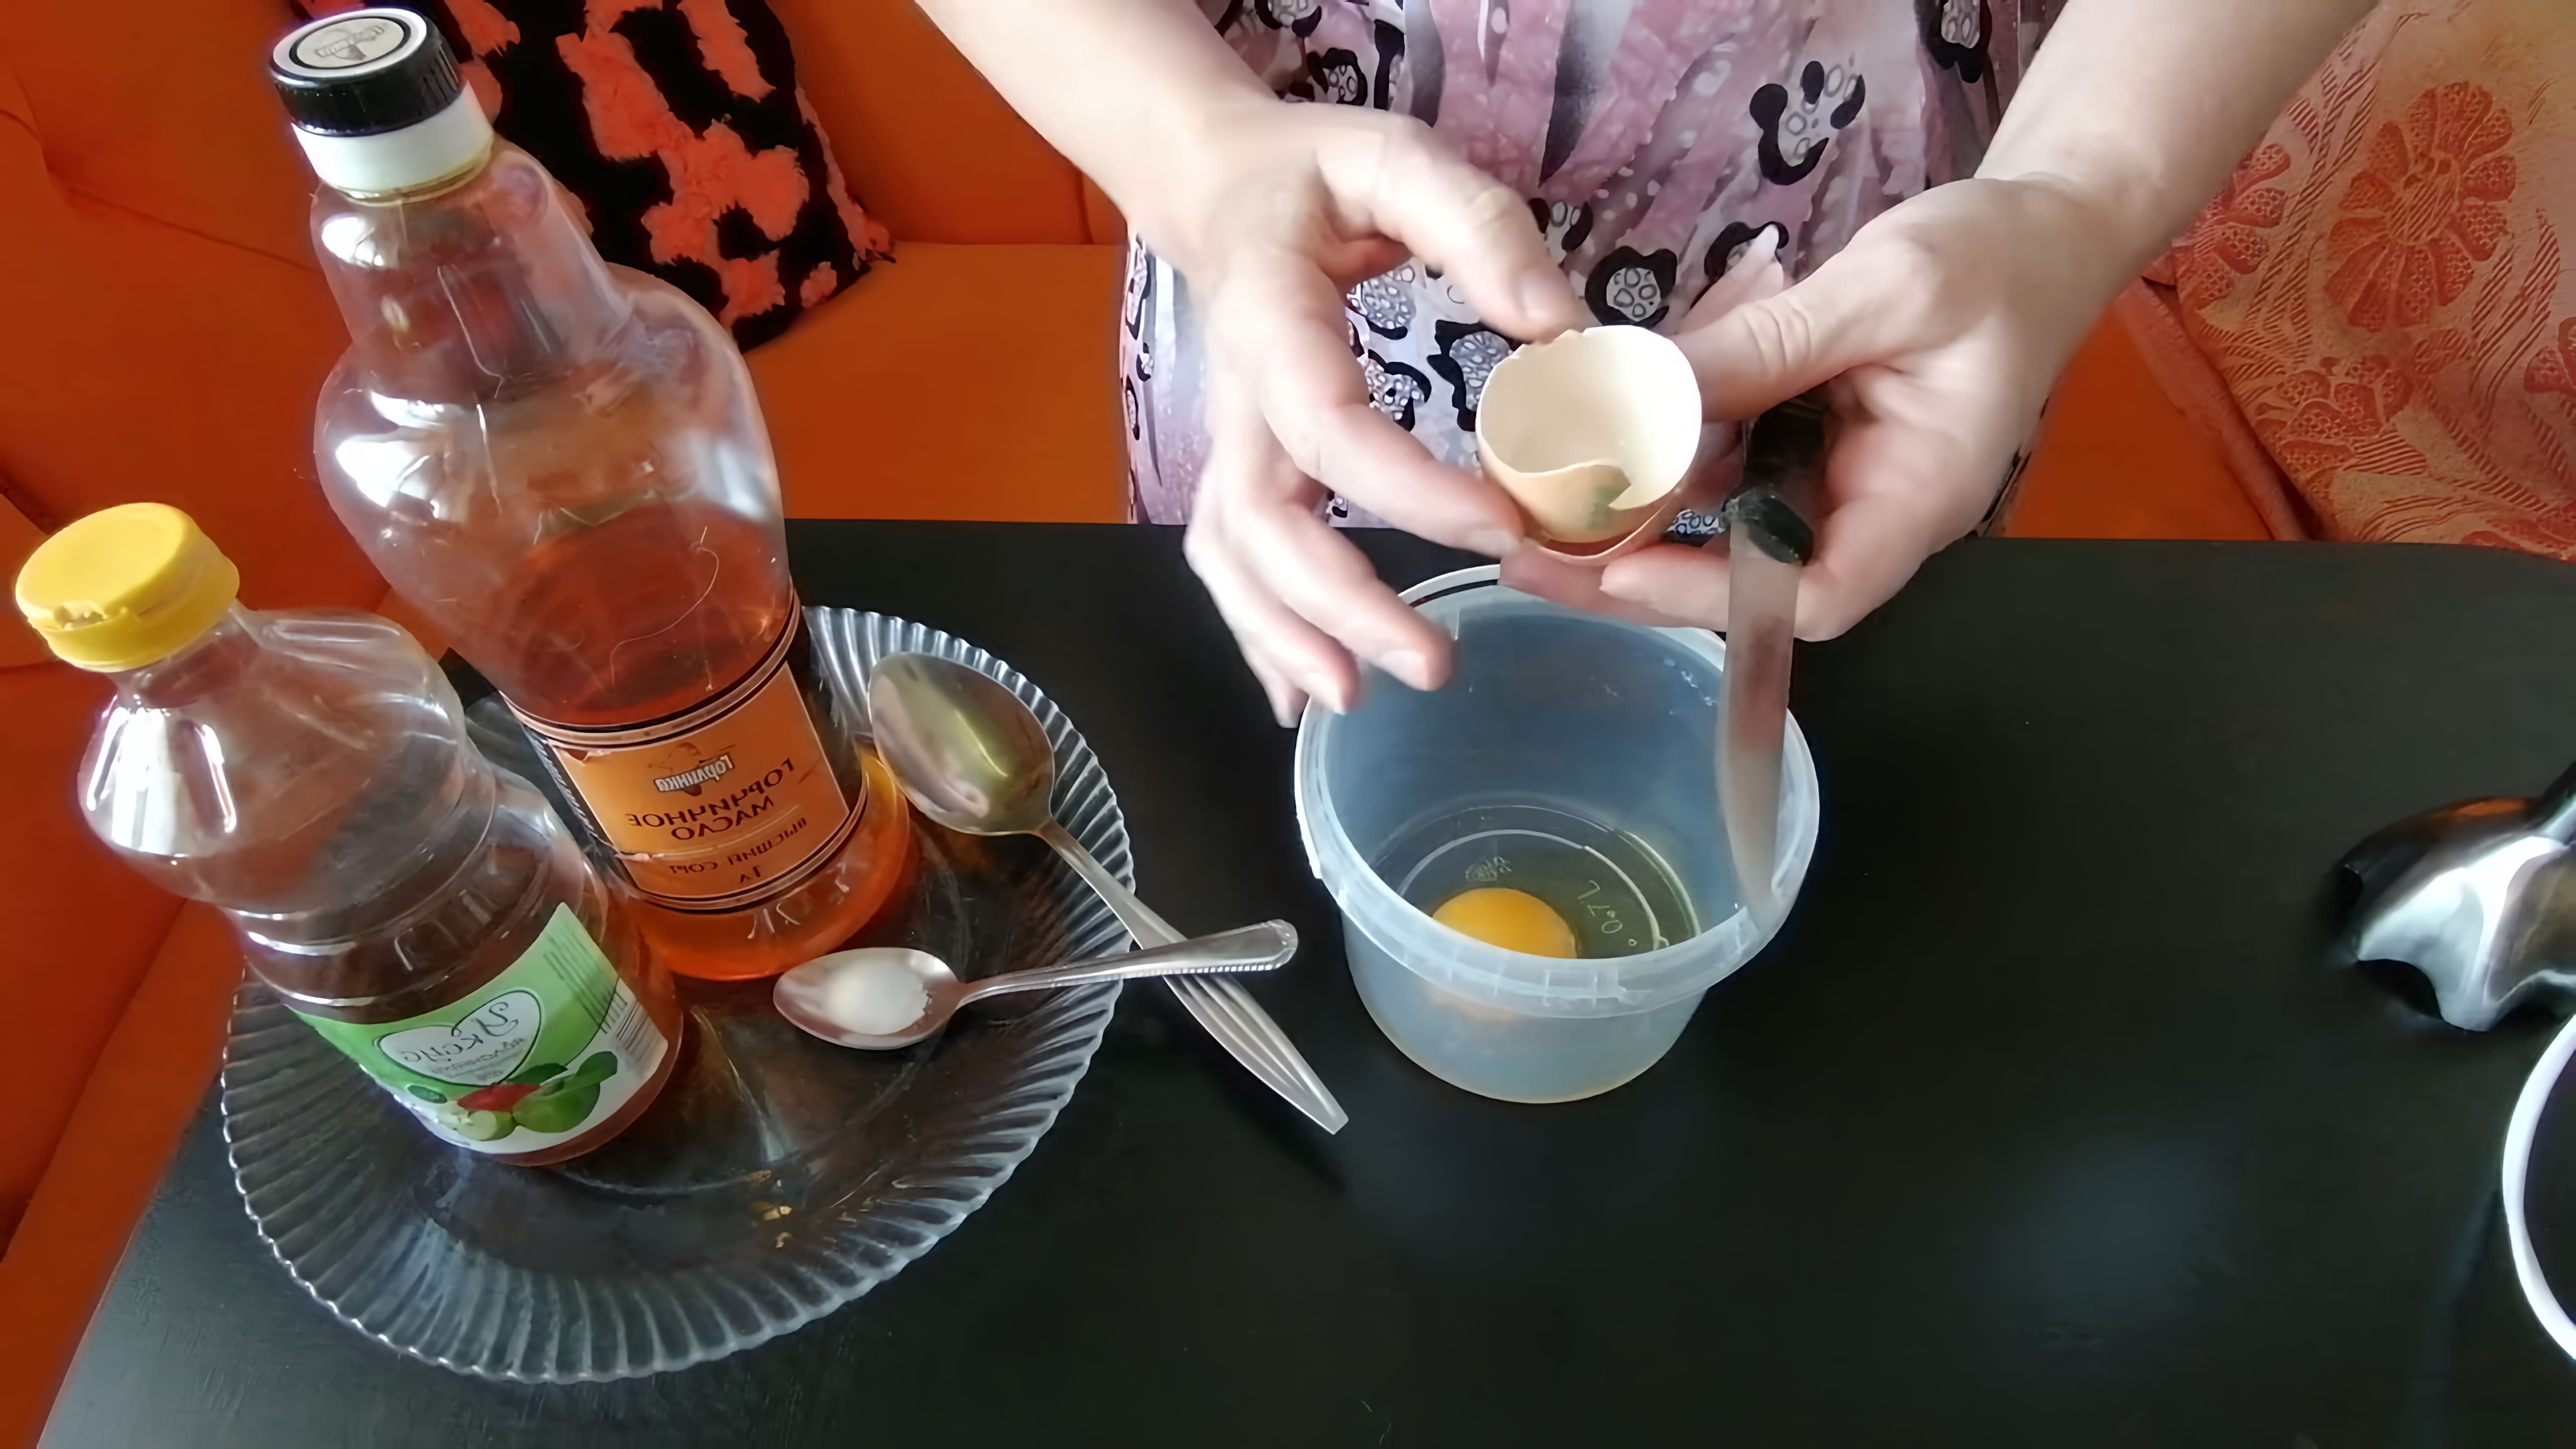 В этом видео демонстрируется процесс приготовления горчичного майонеза на яйцах, предварительно обработанных уксусом